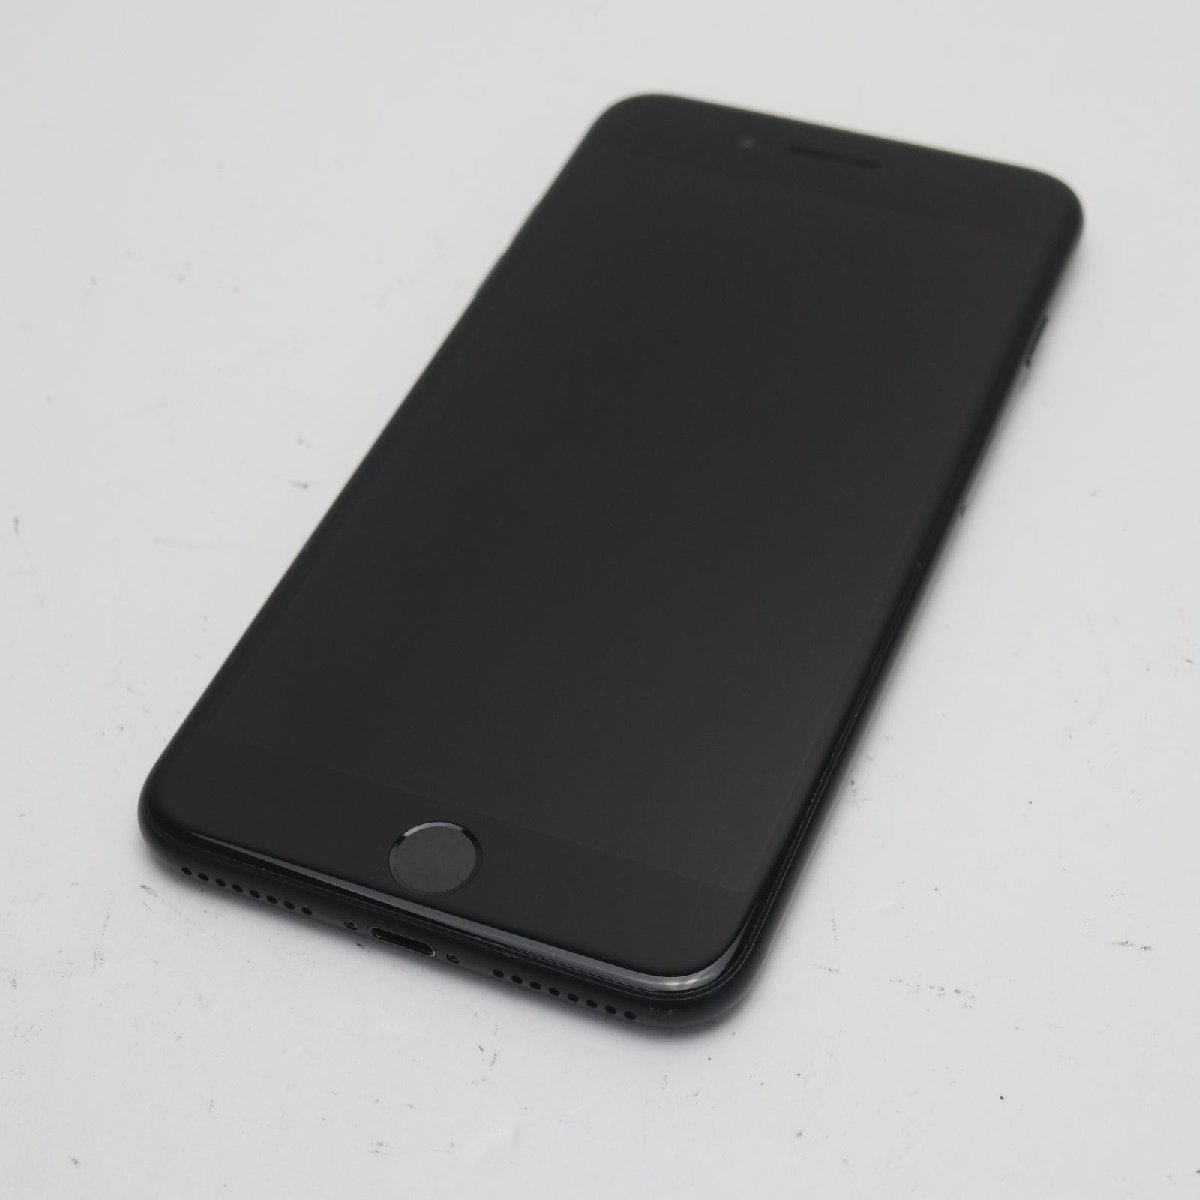 代引き手数料無料 超美品 SIMフリー iPhone7 PLUS 256GB ブラック 即日